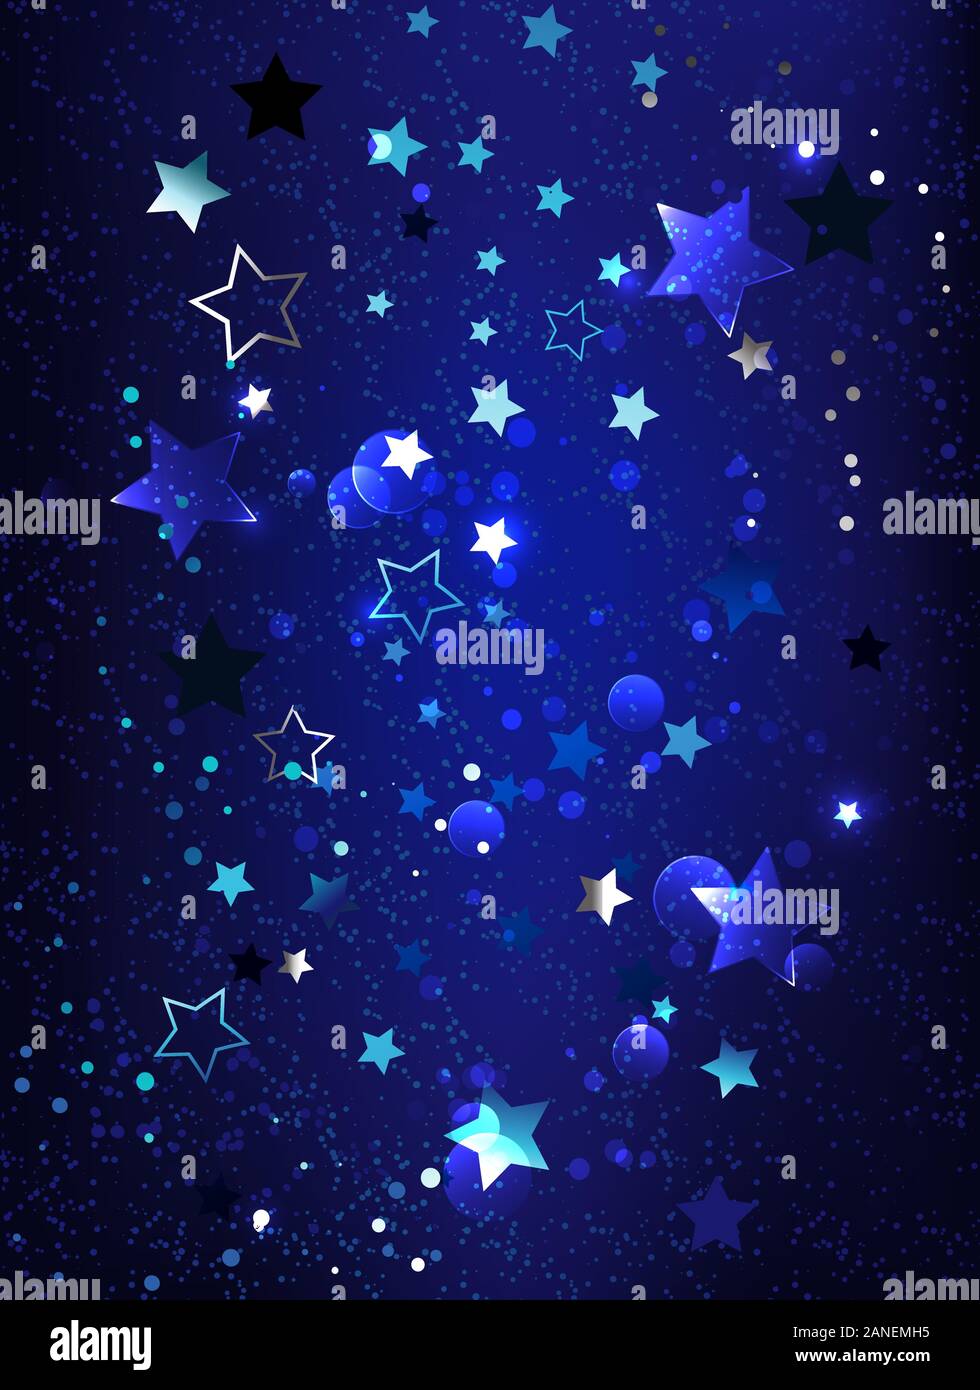 Dunkel, blau strukturierten Hintergrund mit blauen, glänzende, kleine Sterne. Phantom blau. Stock Vektor